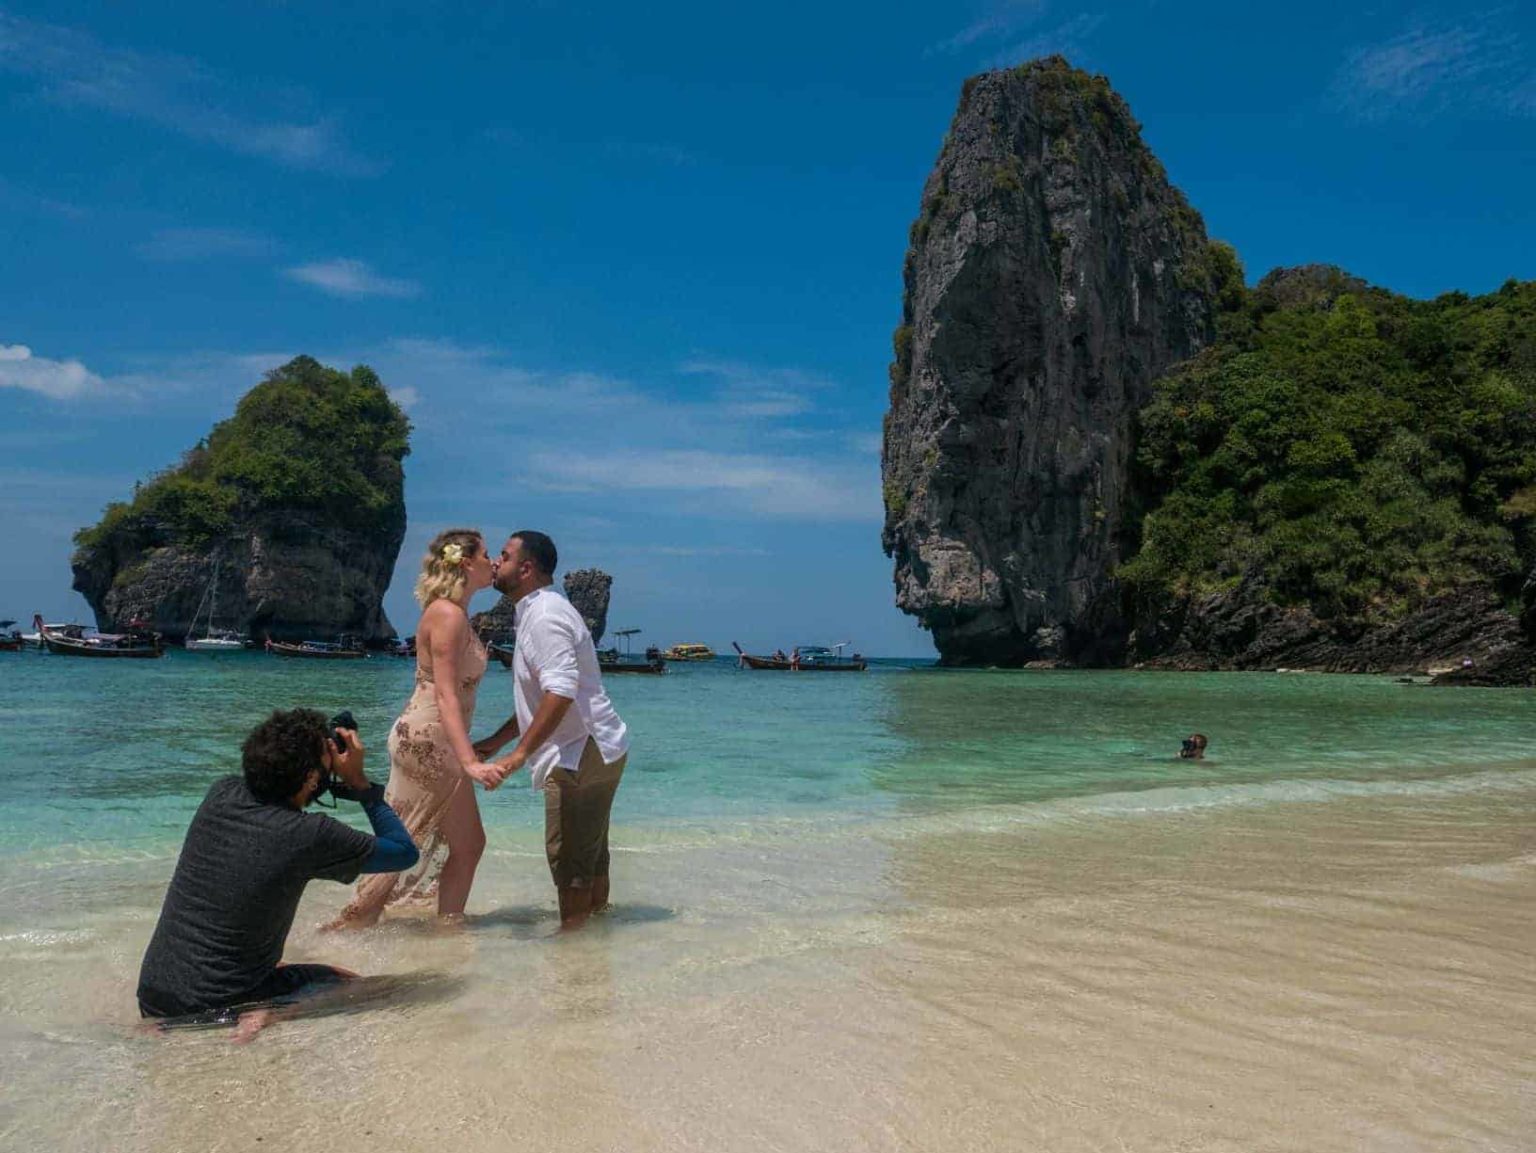 Um fotógrafo tirando foto de um casal em uma praia da Tailândia